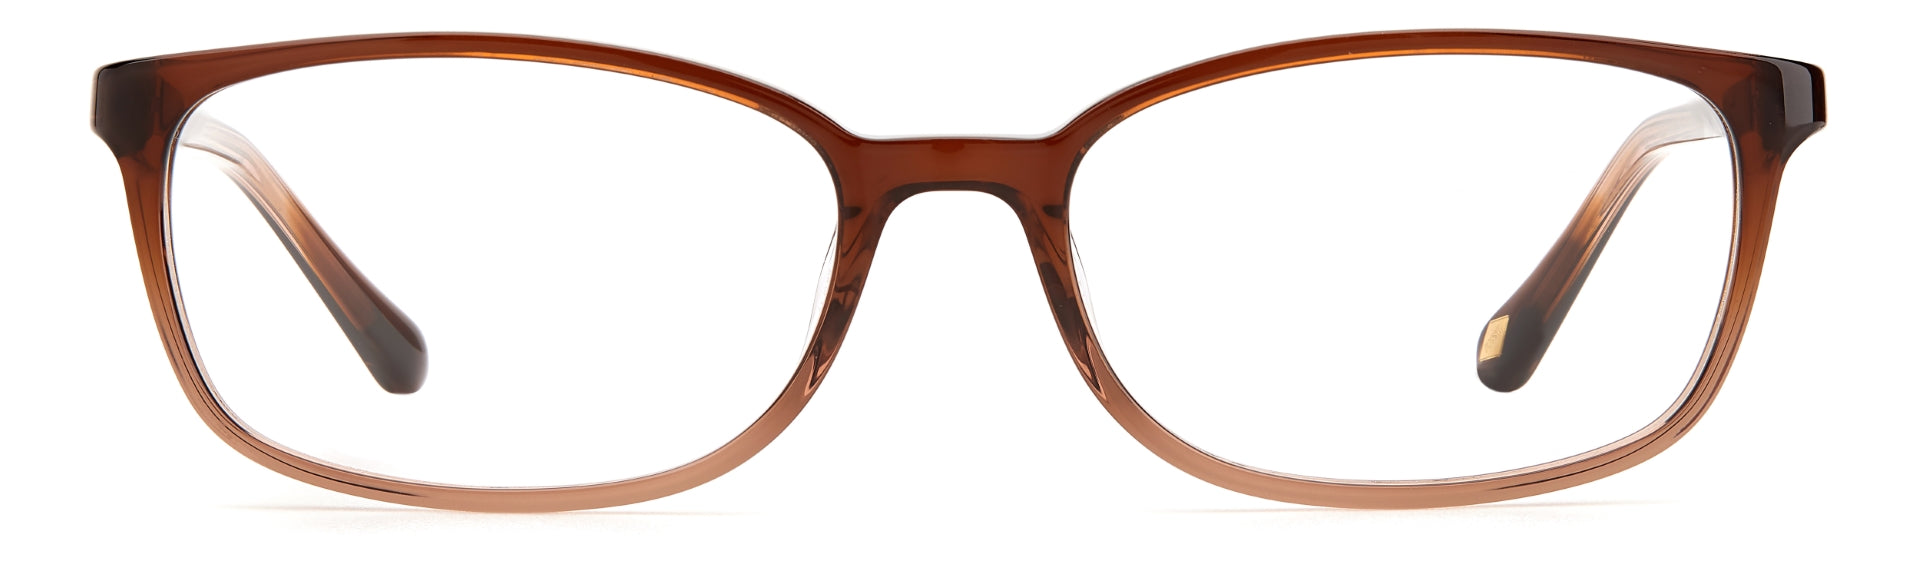 FOSSIL WOMEN RECTANGULAR Eyeglasses-FOS 7114 S55